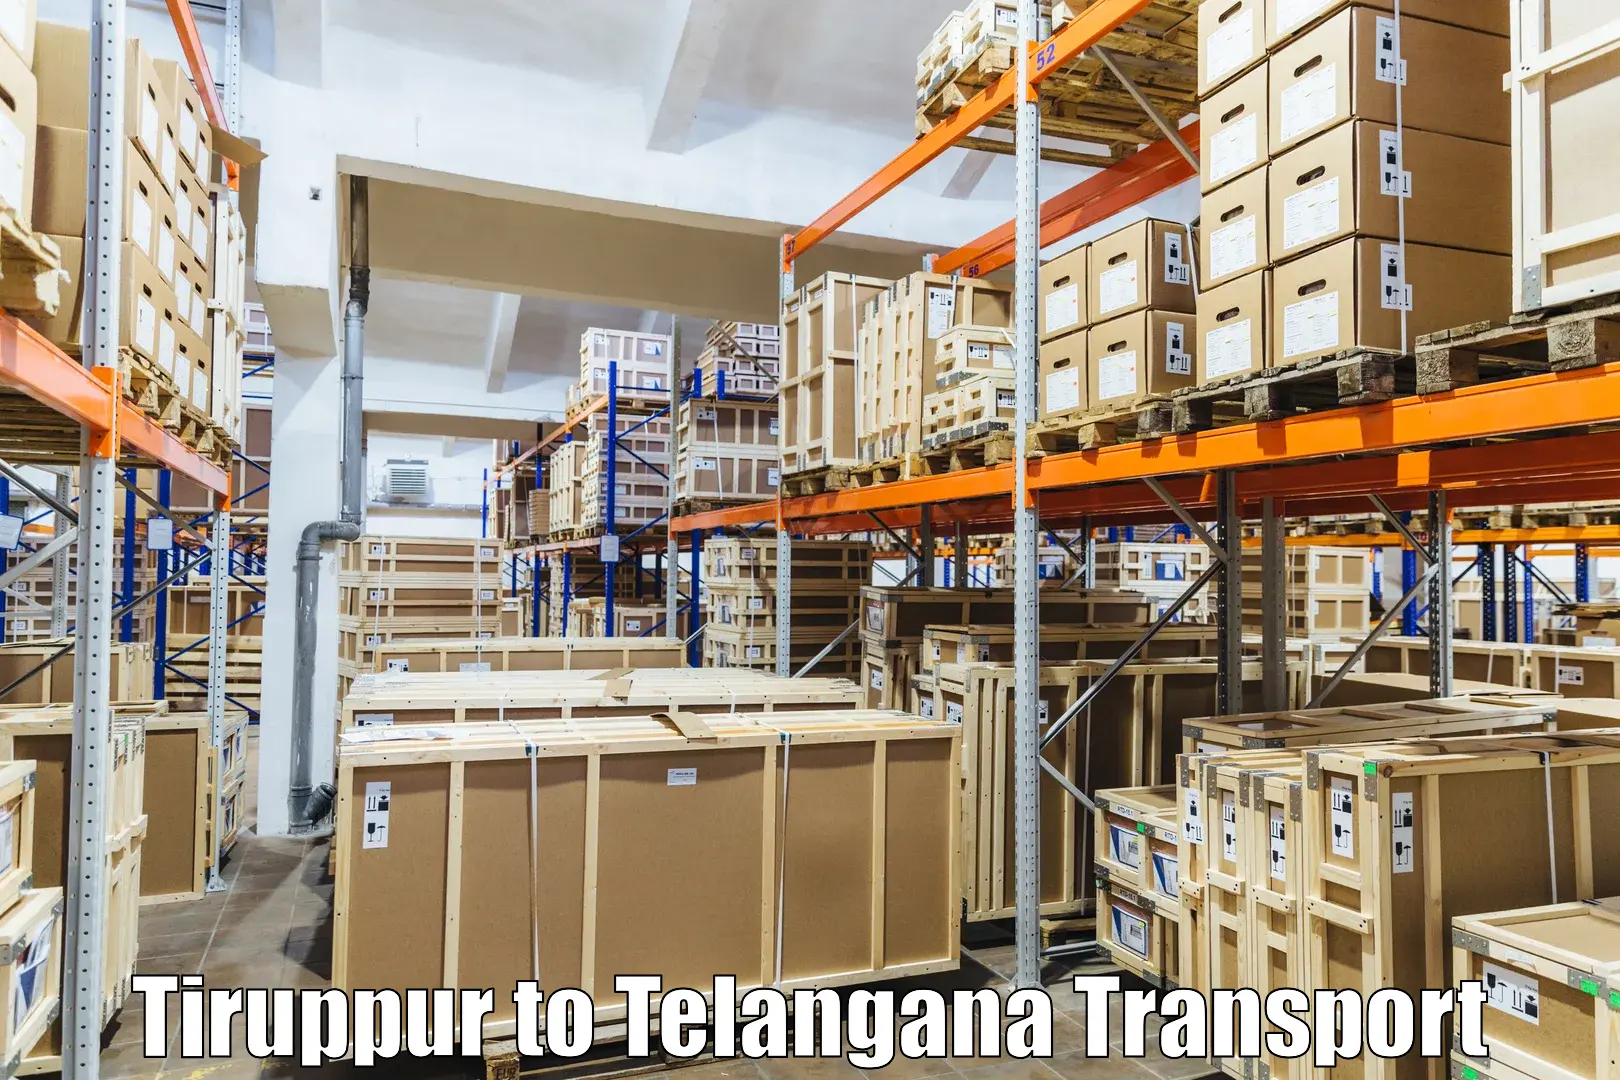 Shipping partner Tiruppur to Vikarabad